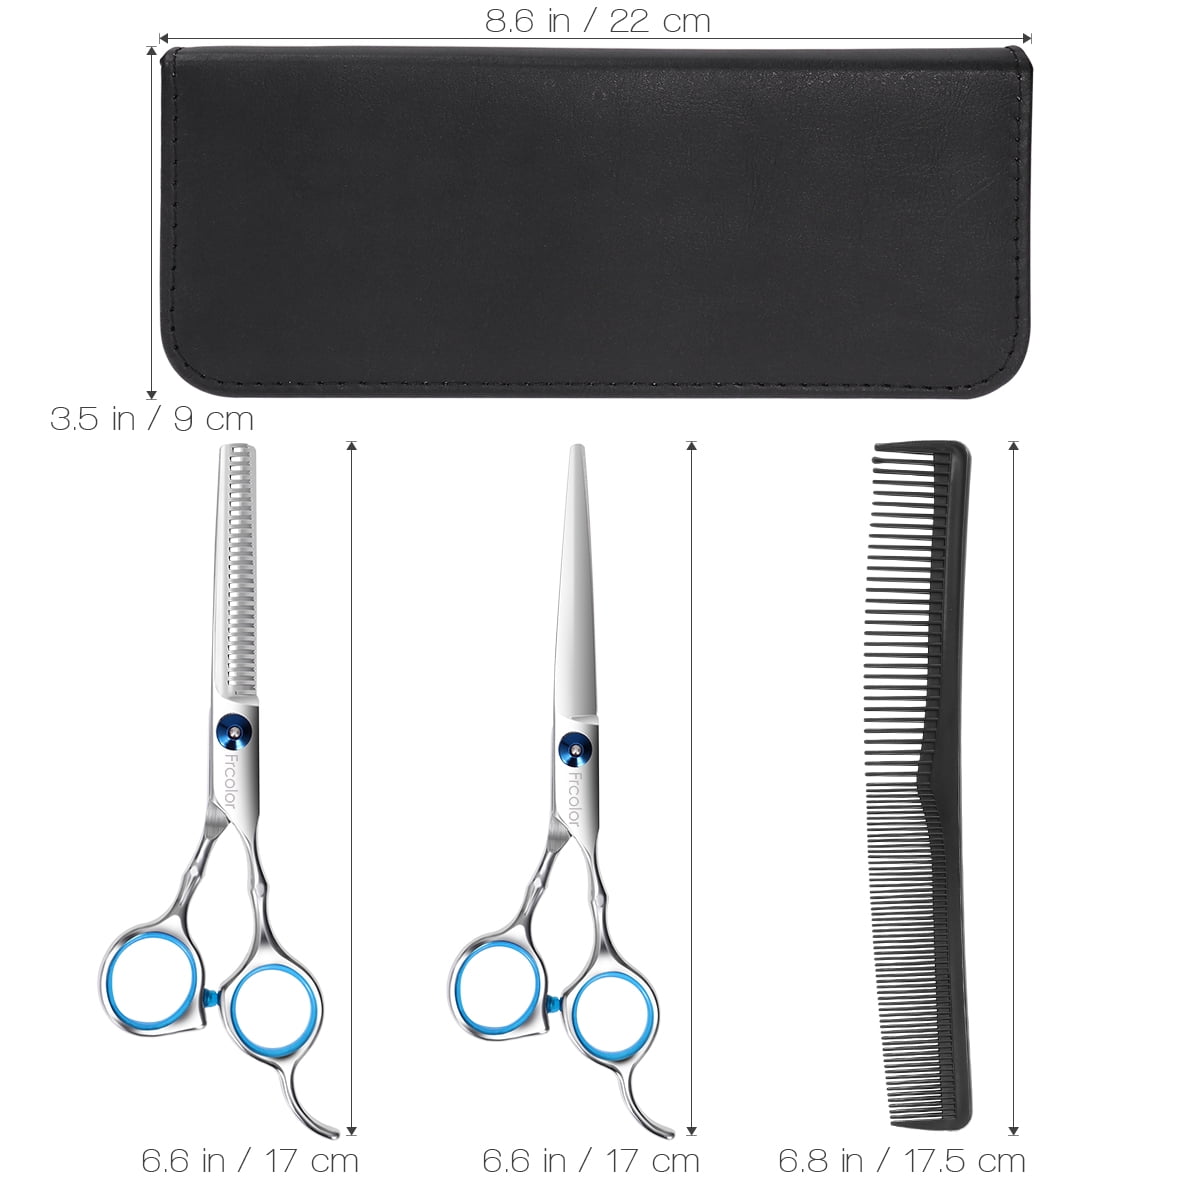 frcolor hairdresser scissors set